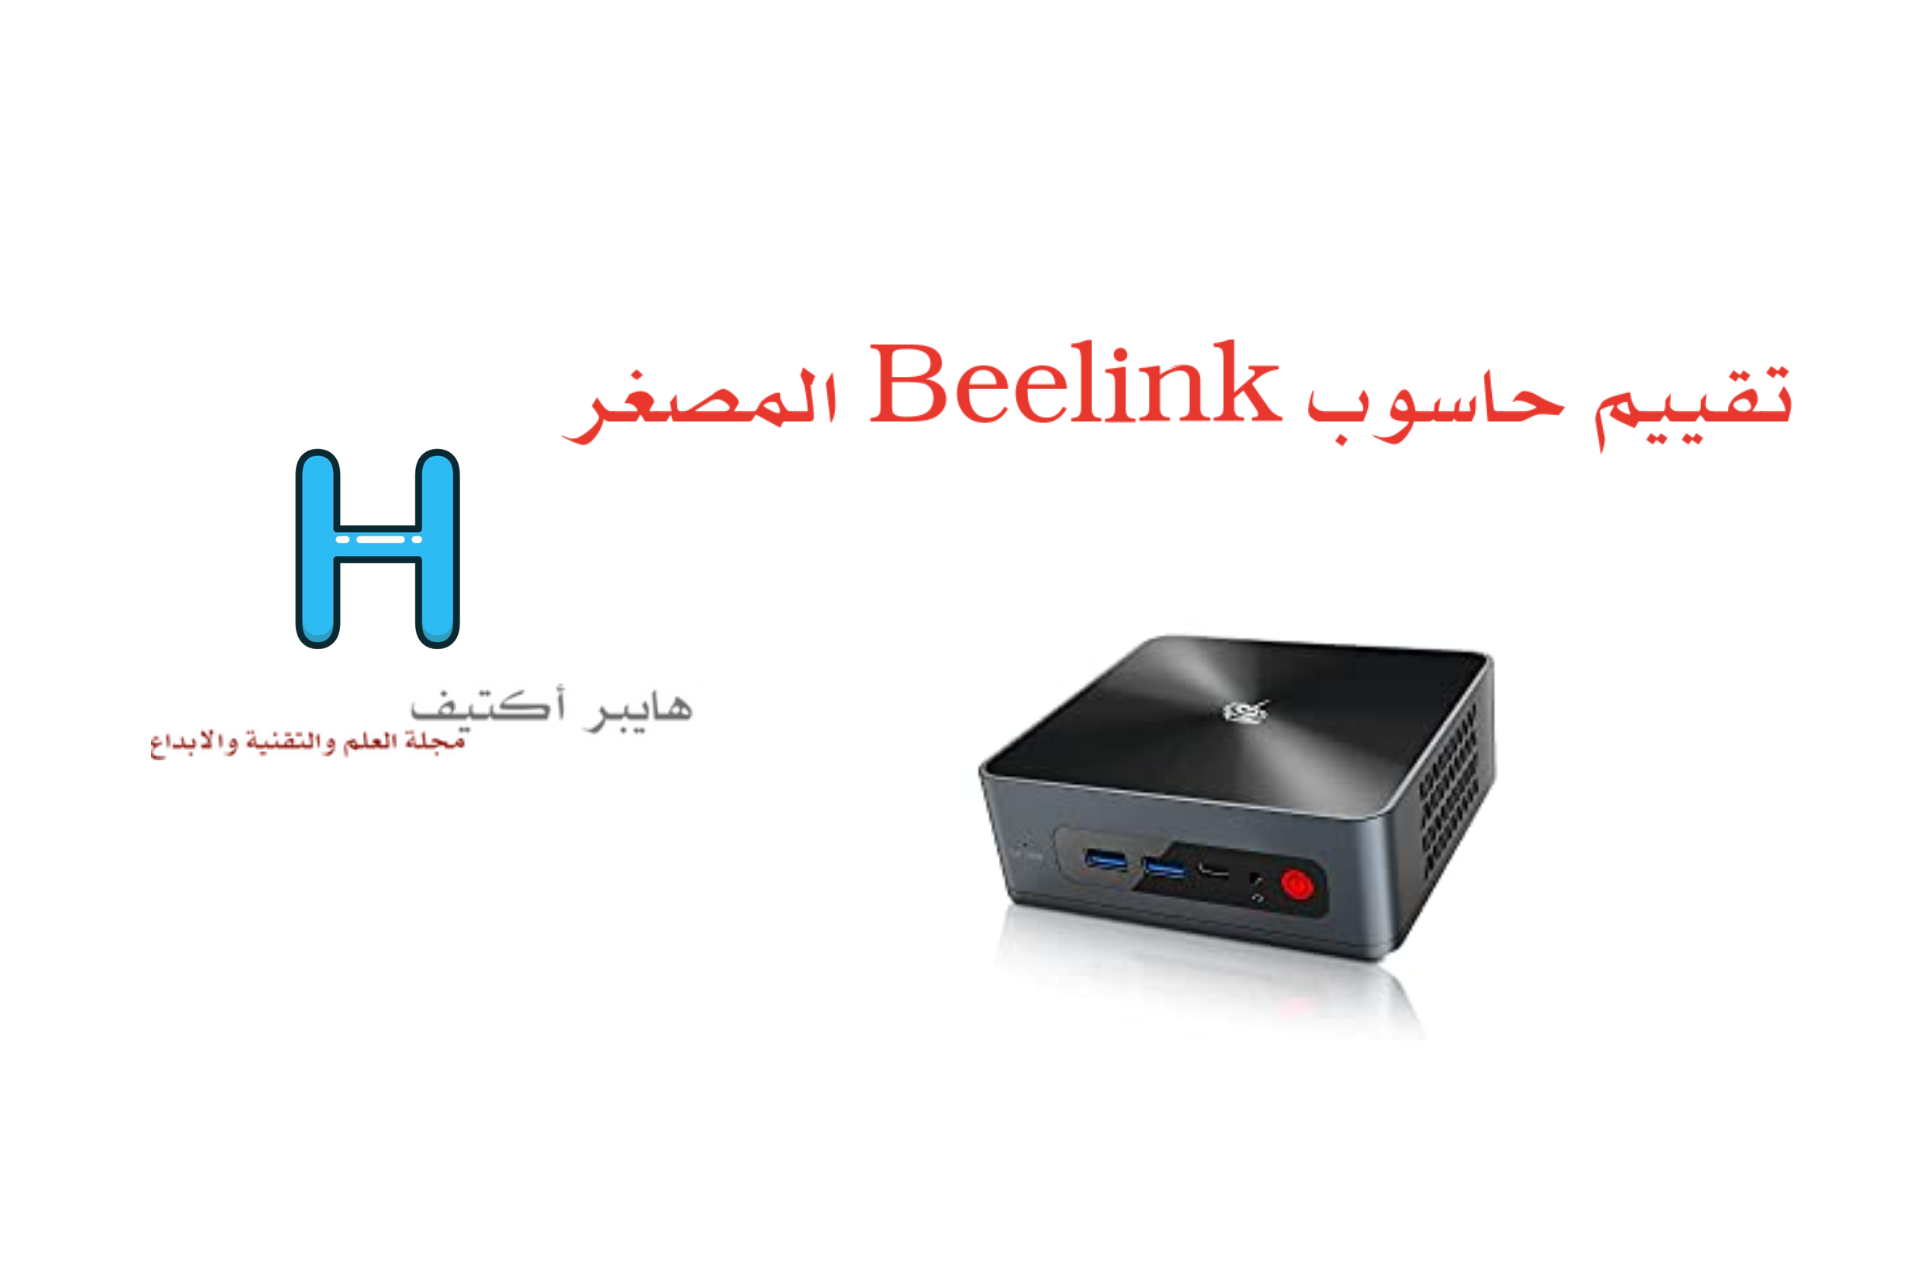 حاسوب Beelink